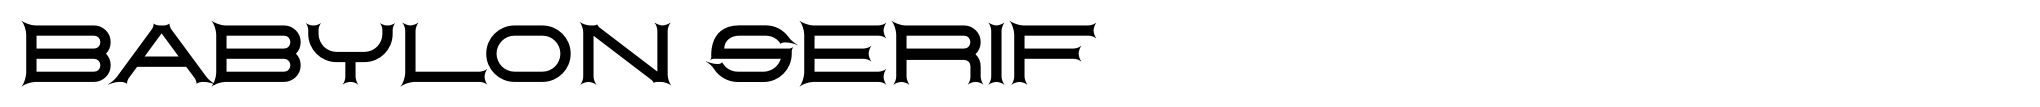 Babylon Serif image